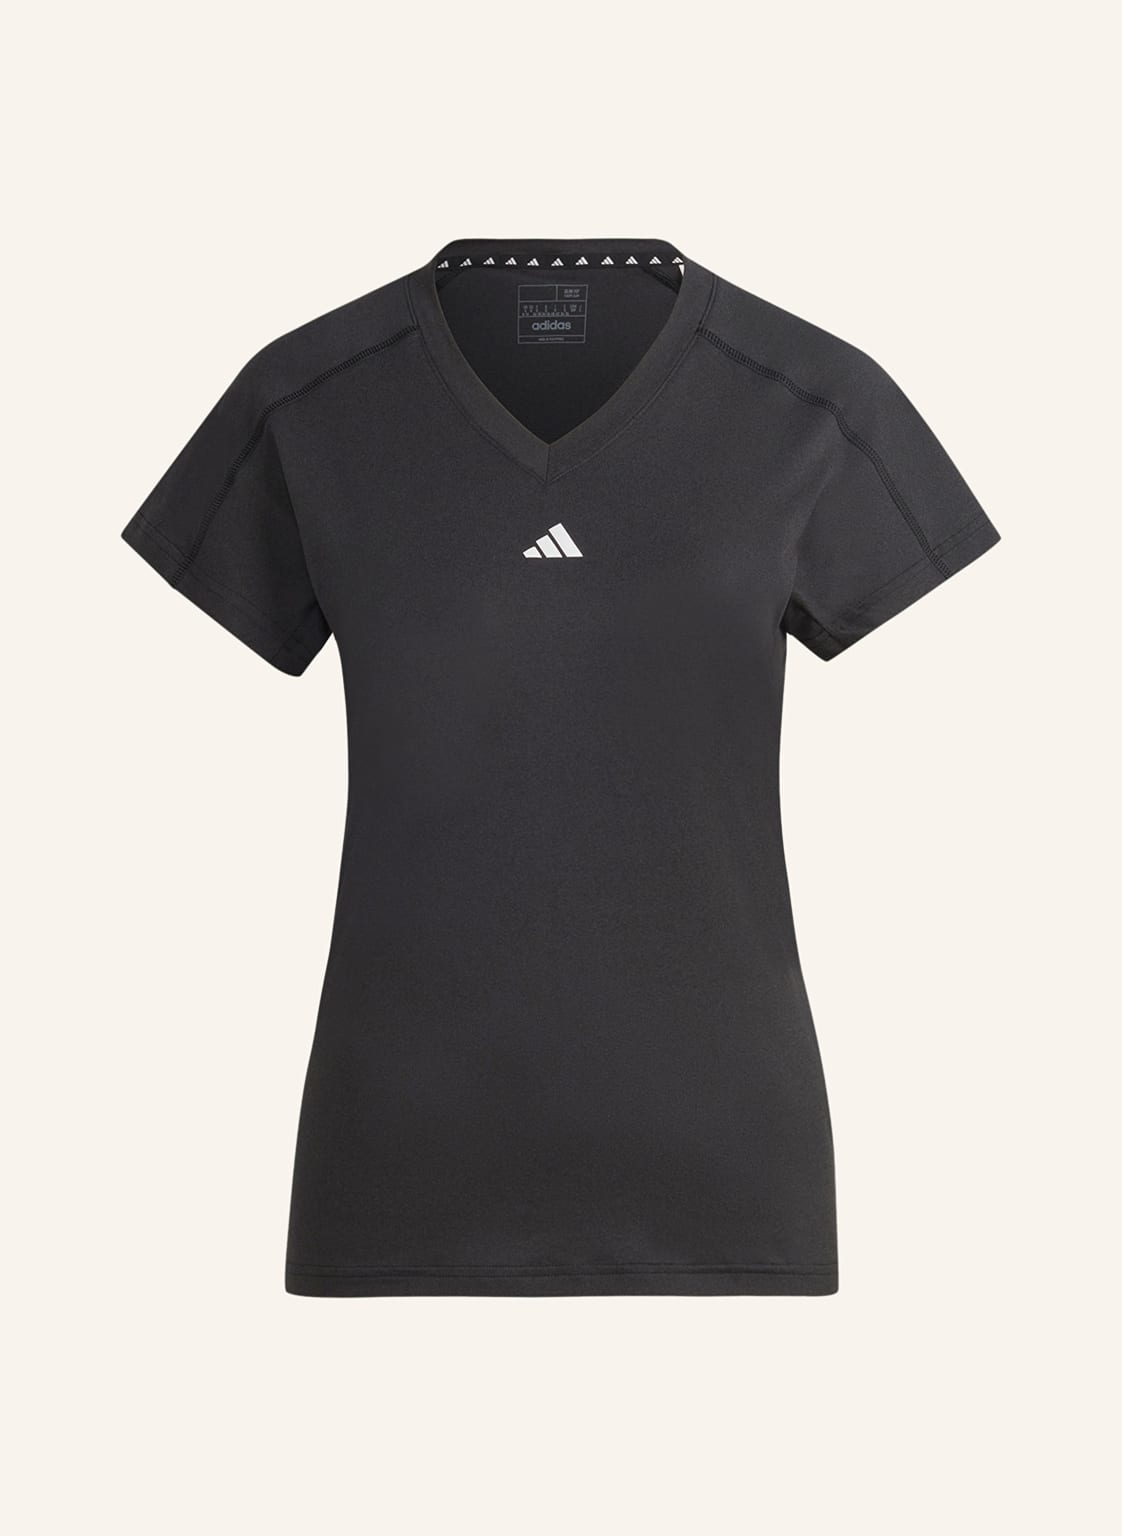 Adidas T-Shirt schwarz von Adidas